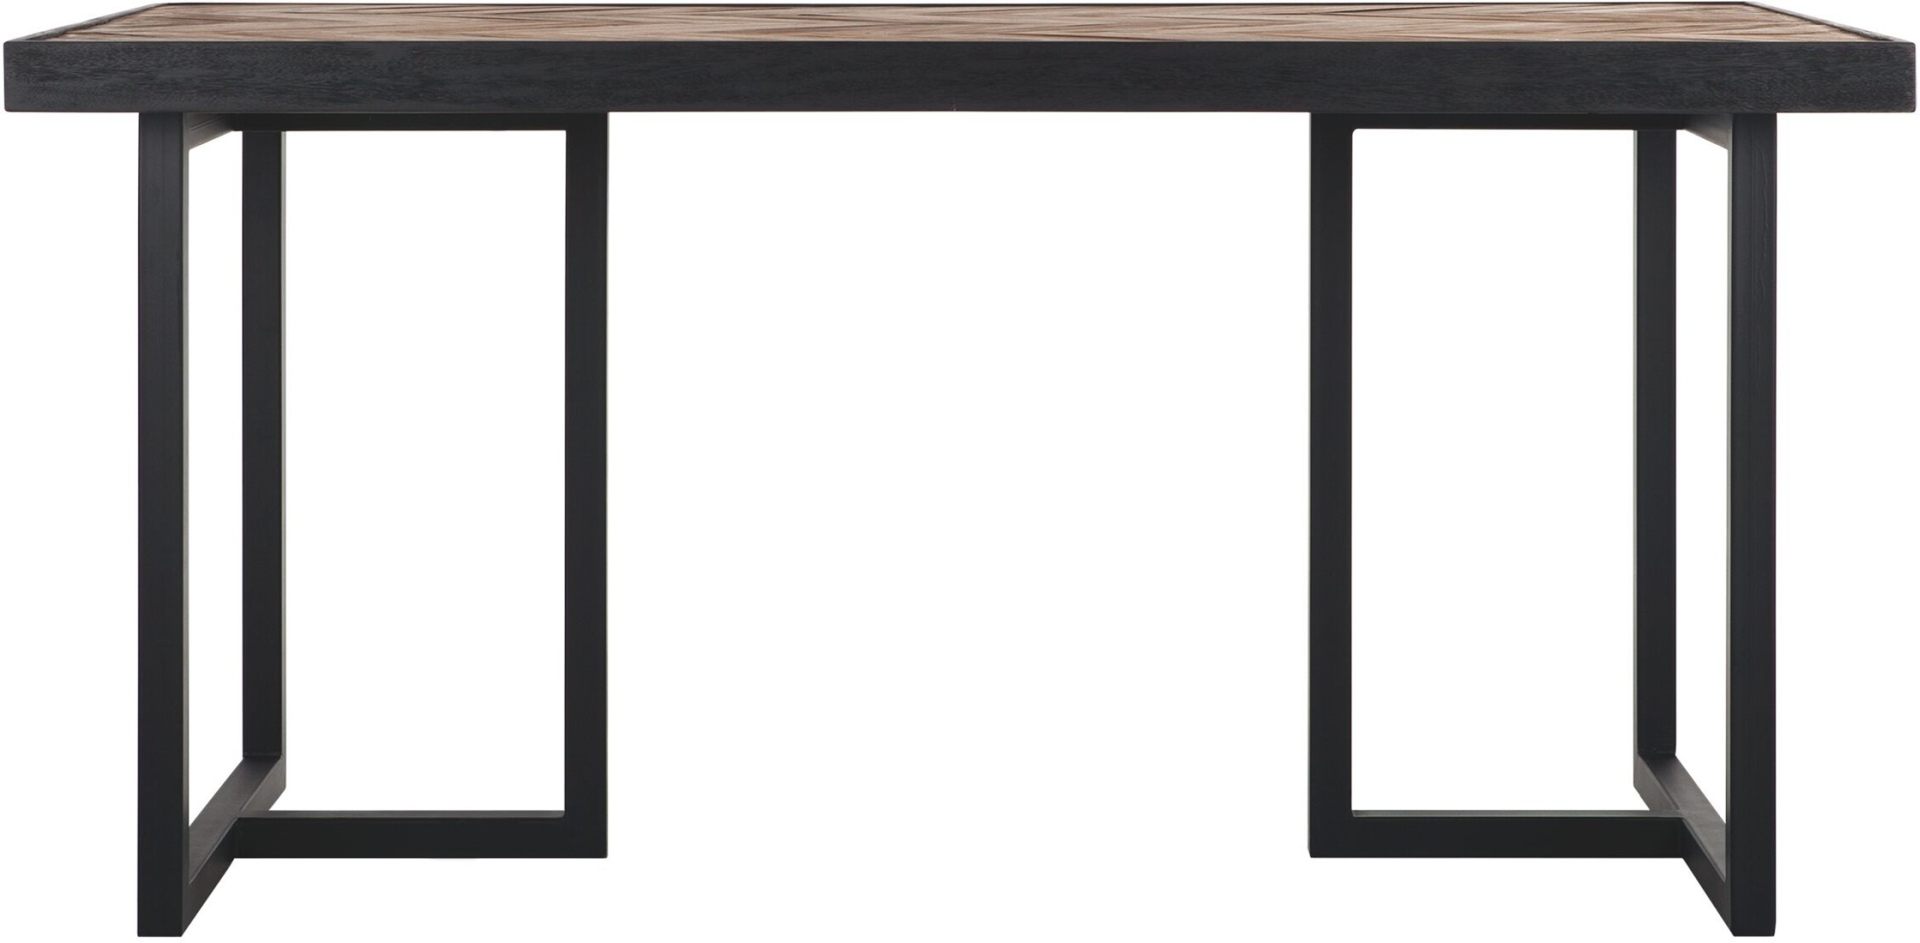 Der Esstisch Criss Cross überzeugt mit seinem massivem aber auch modernem Design. Gefertigt wurde er aus verschiedenen Holzarten, welche einen natürlichen und schwarzen Farbton besitzen. Der Tisch hat eine Länge von 160 cm.